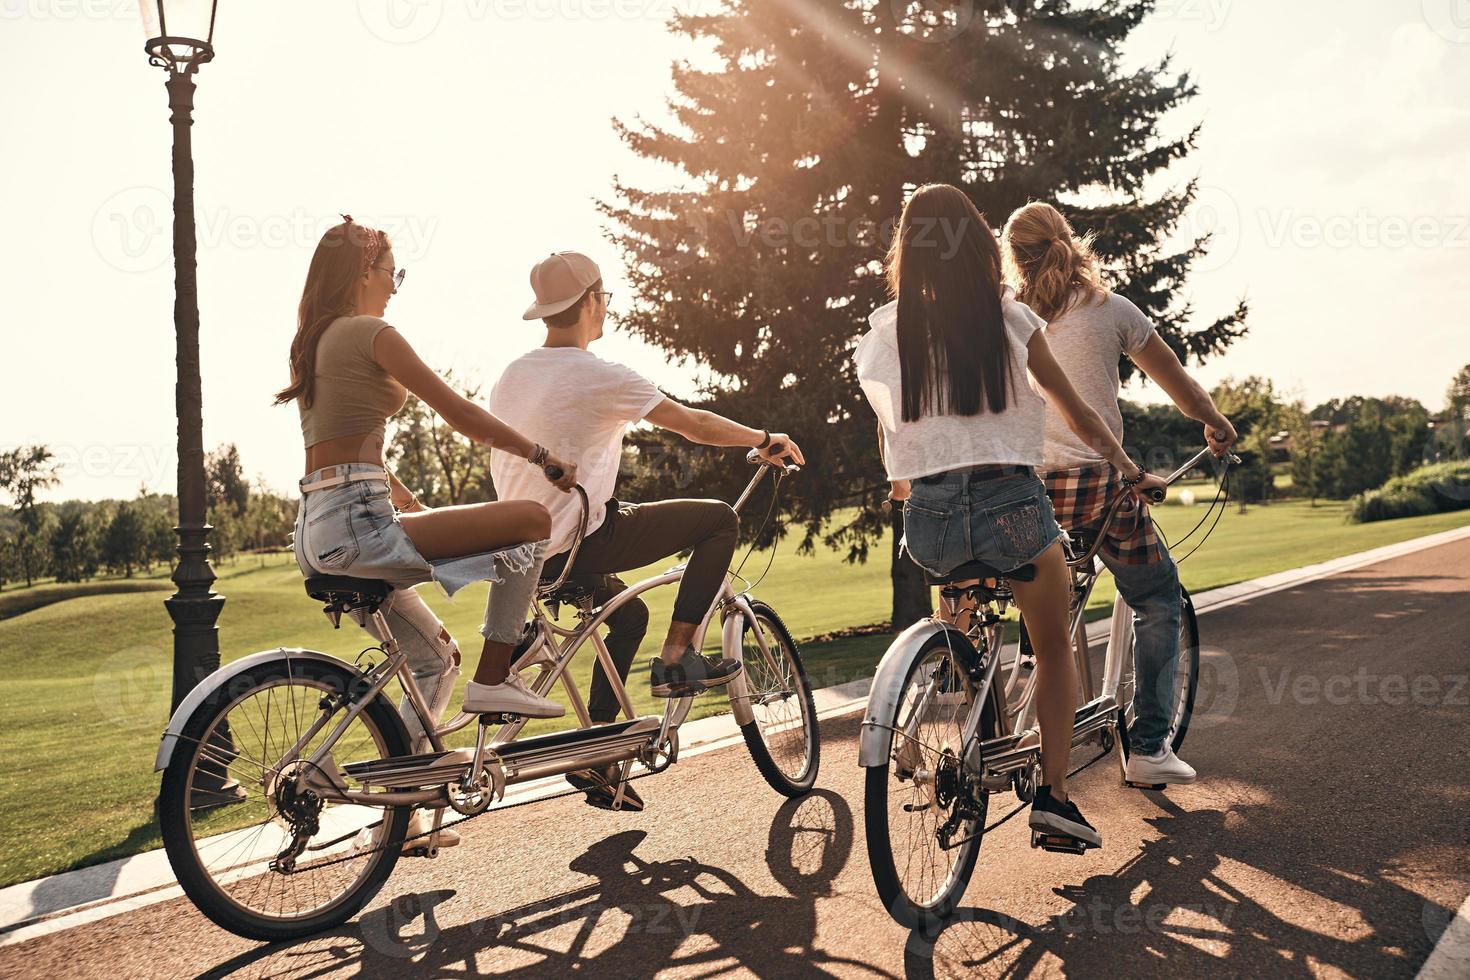 ung och full av energi. grupp av ung människor i tillfällig ha på sig cykling tillsammans medan utgifterna sorglös tid utomhus foto